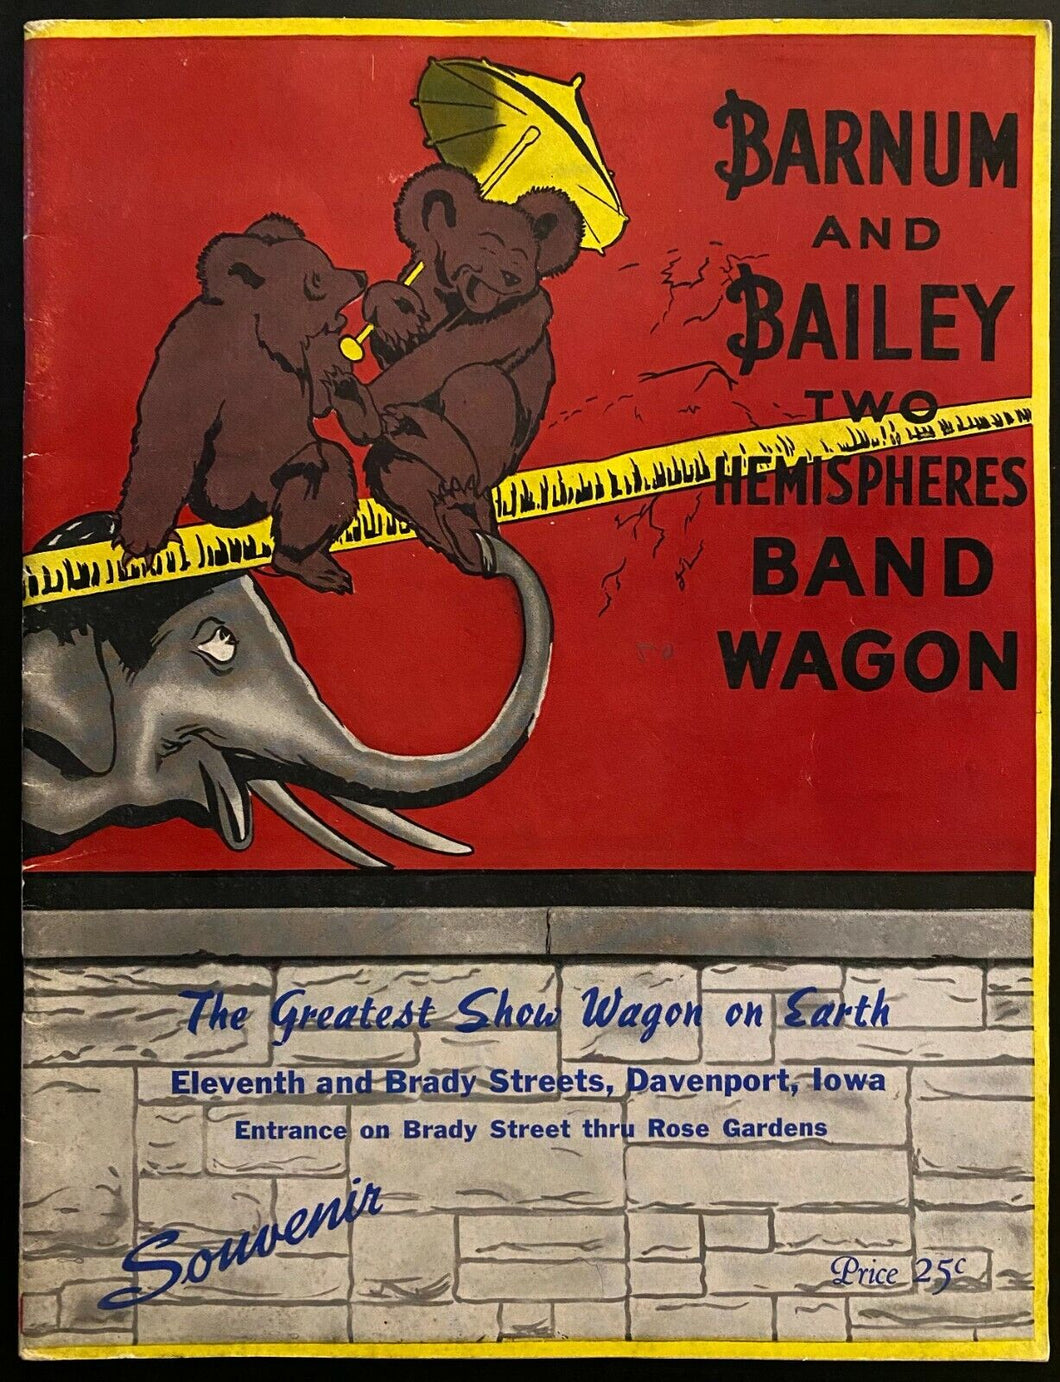 1946 Barnum + Bailey Two Hemispheres Band Wagon Circus Photos Program Vintage